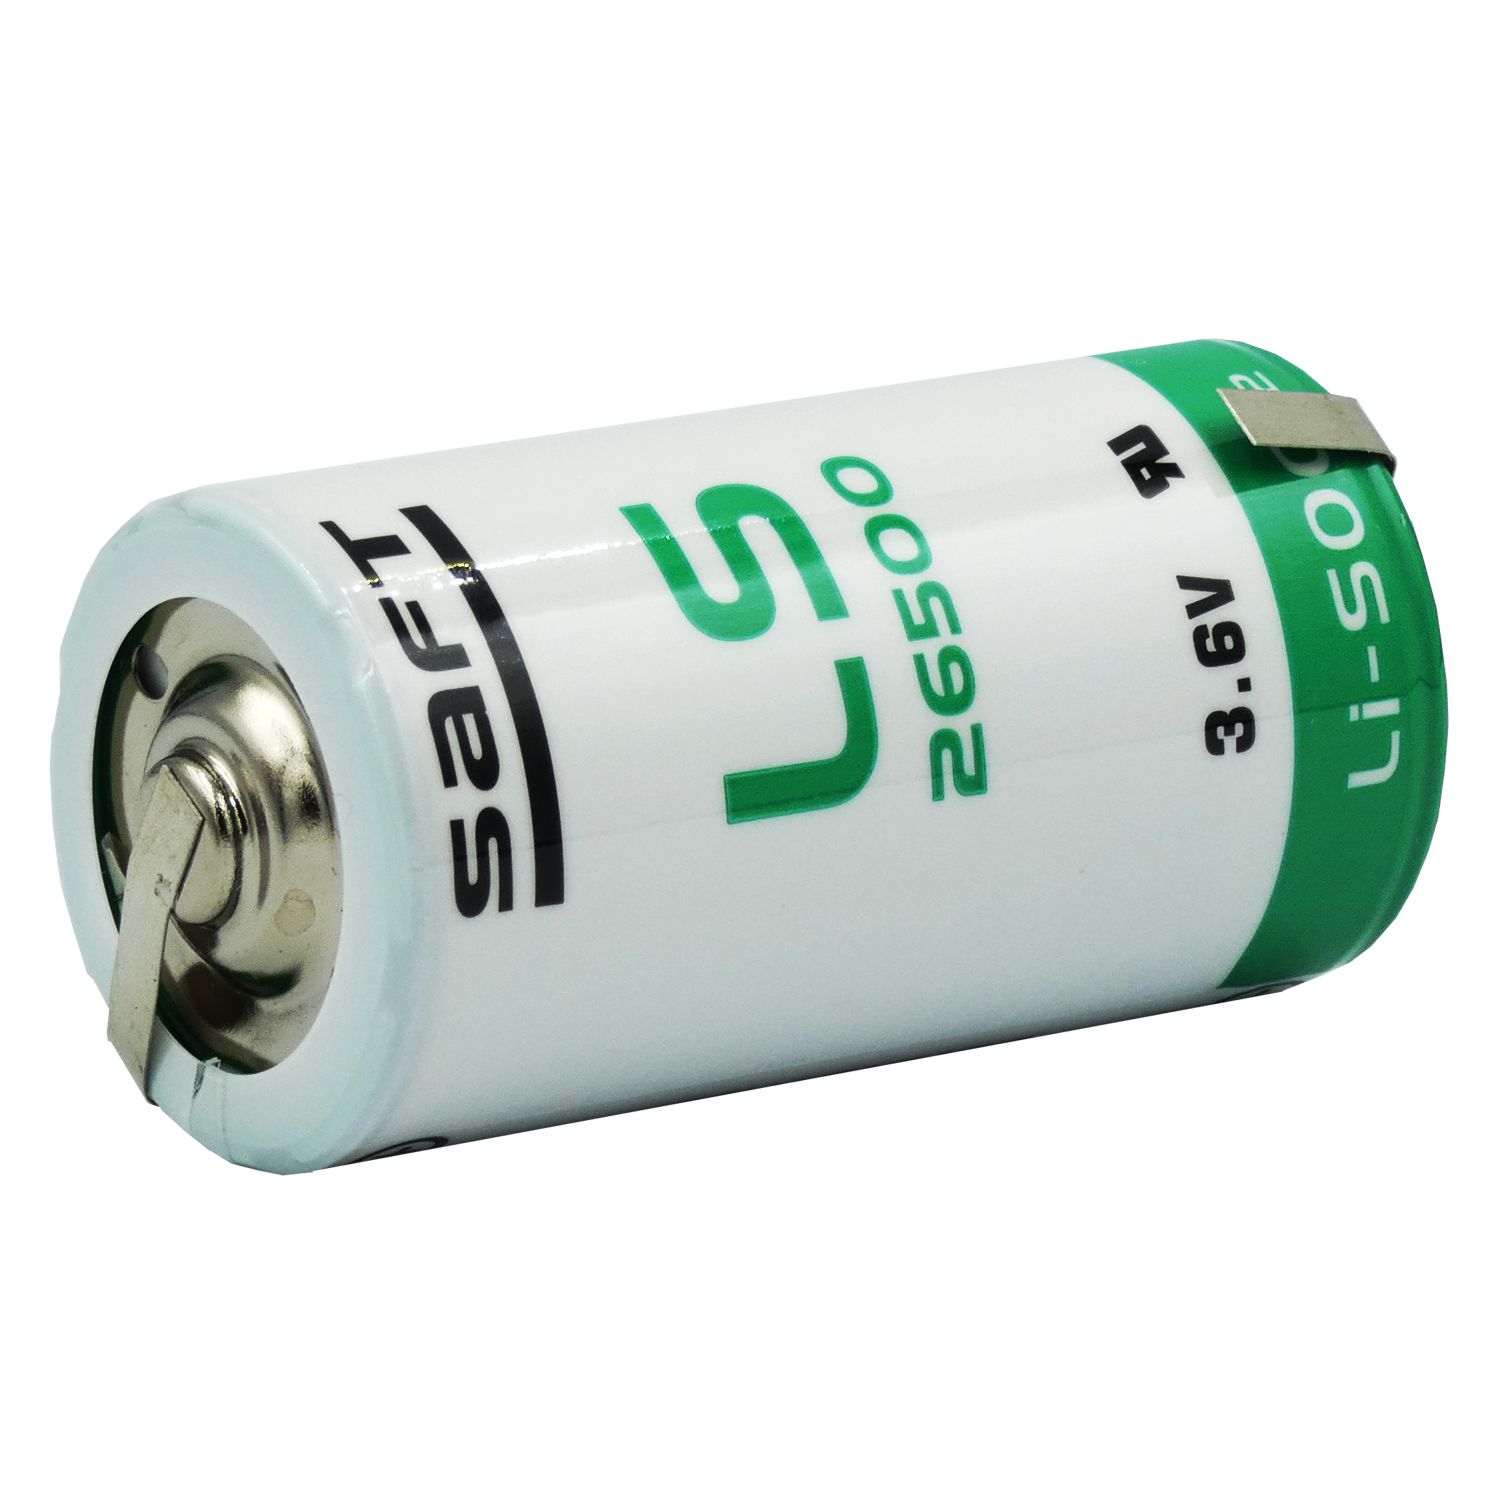 Saft Baby Batterie LS26500 (3,6V) mit Lötfahne in Z-Form